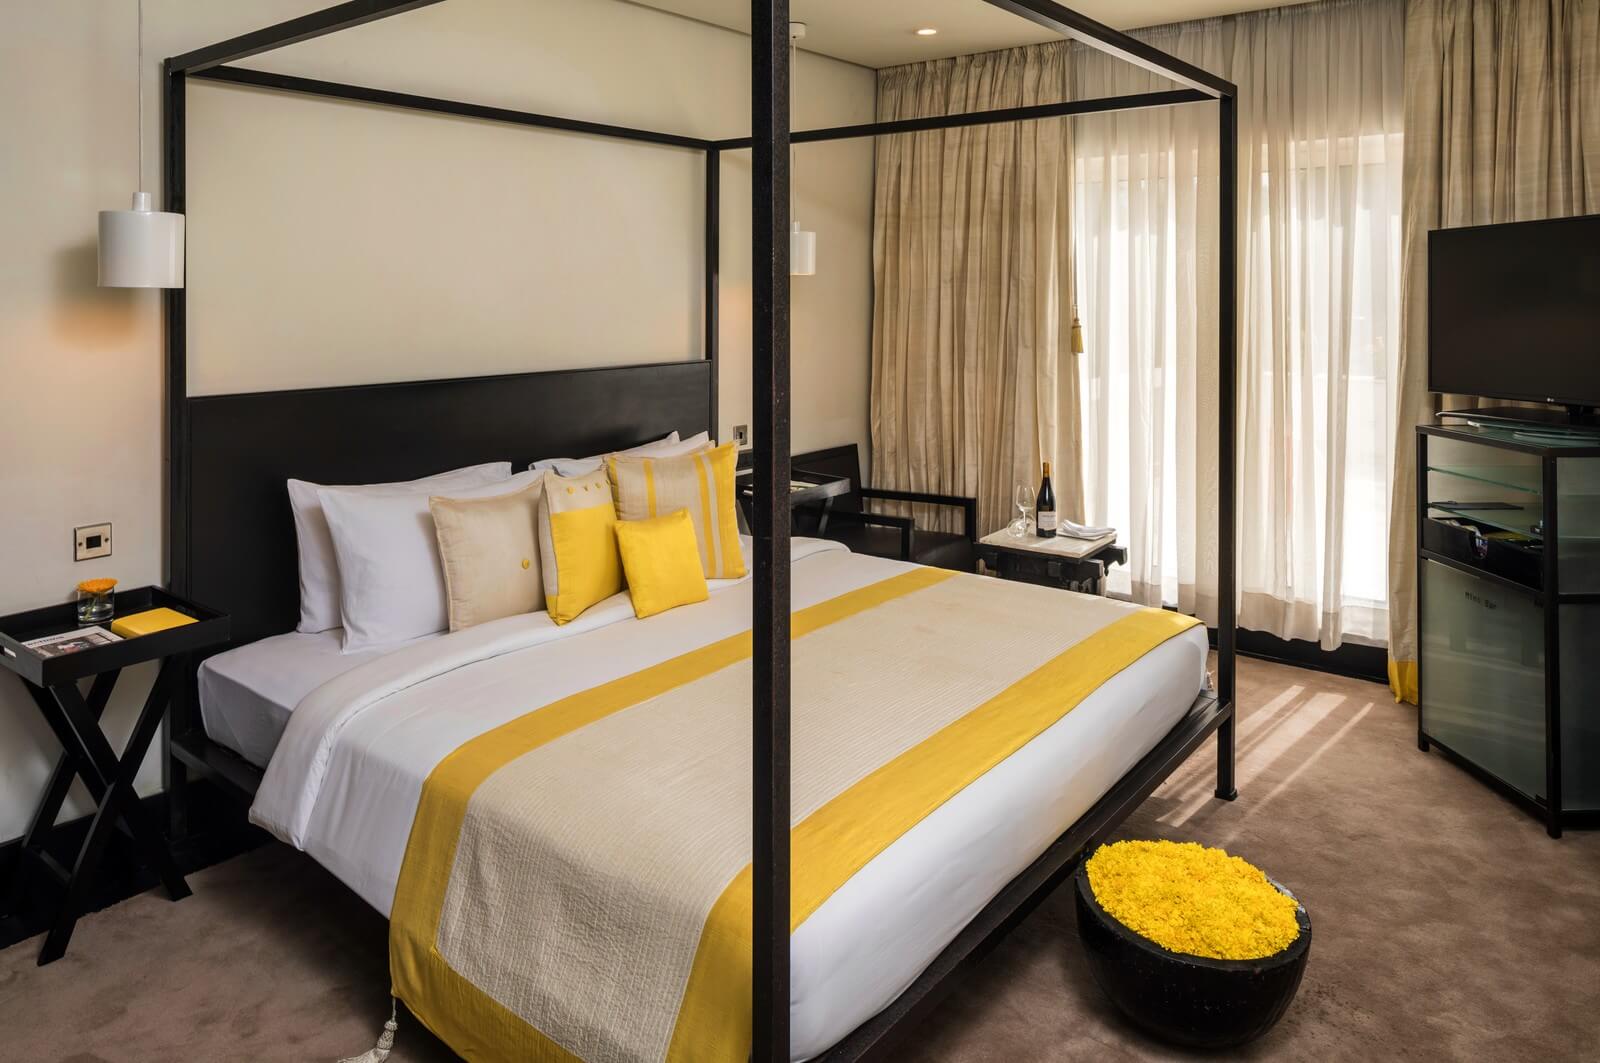 Premier Suite at The Park Hotels Bangalore